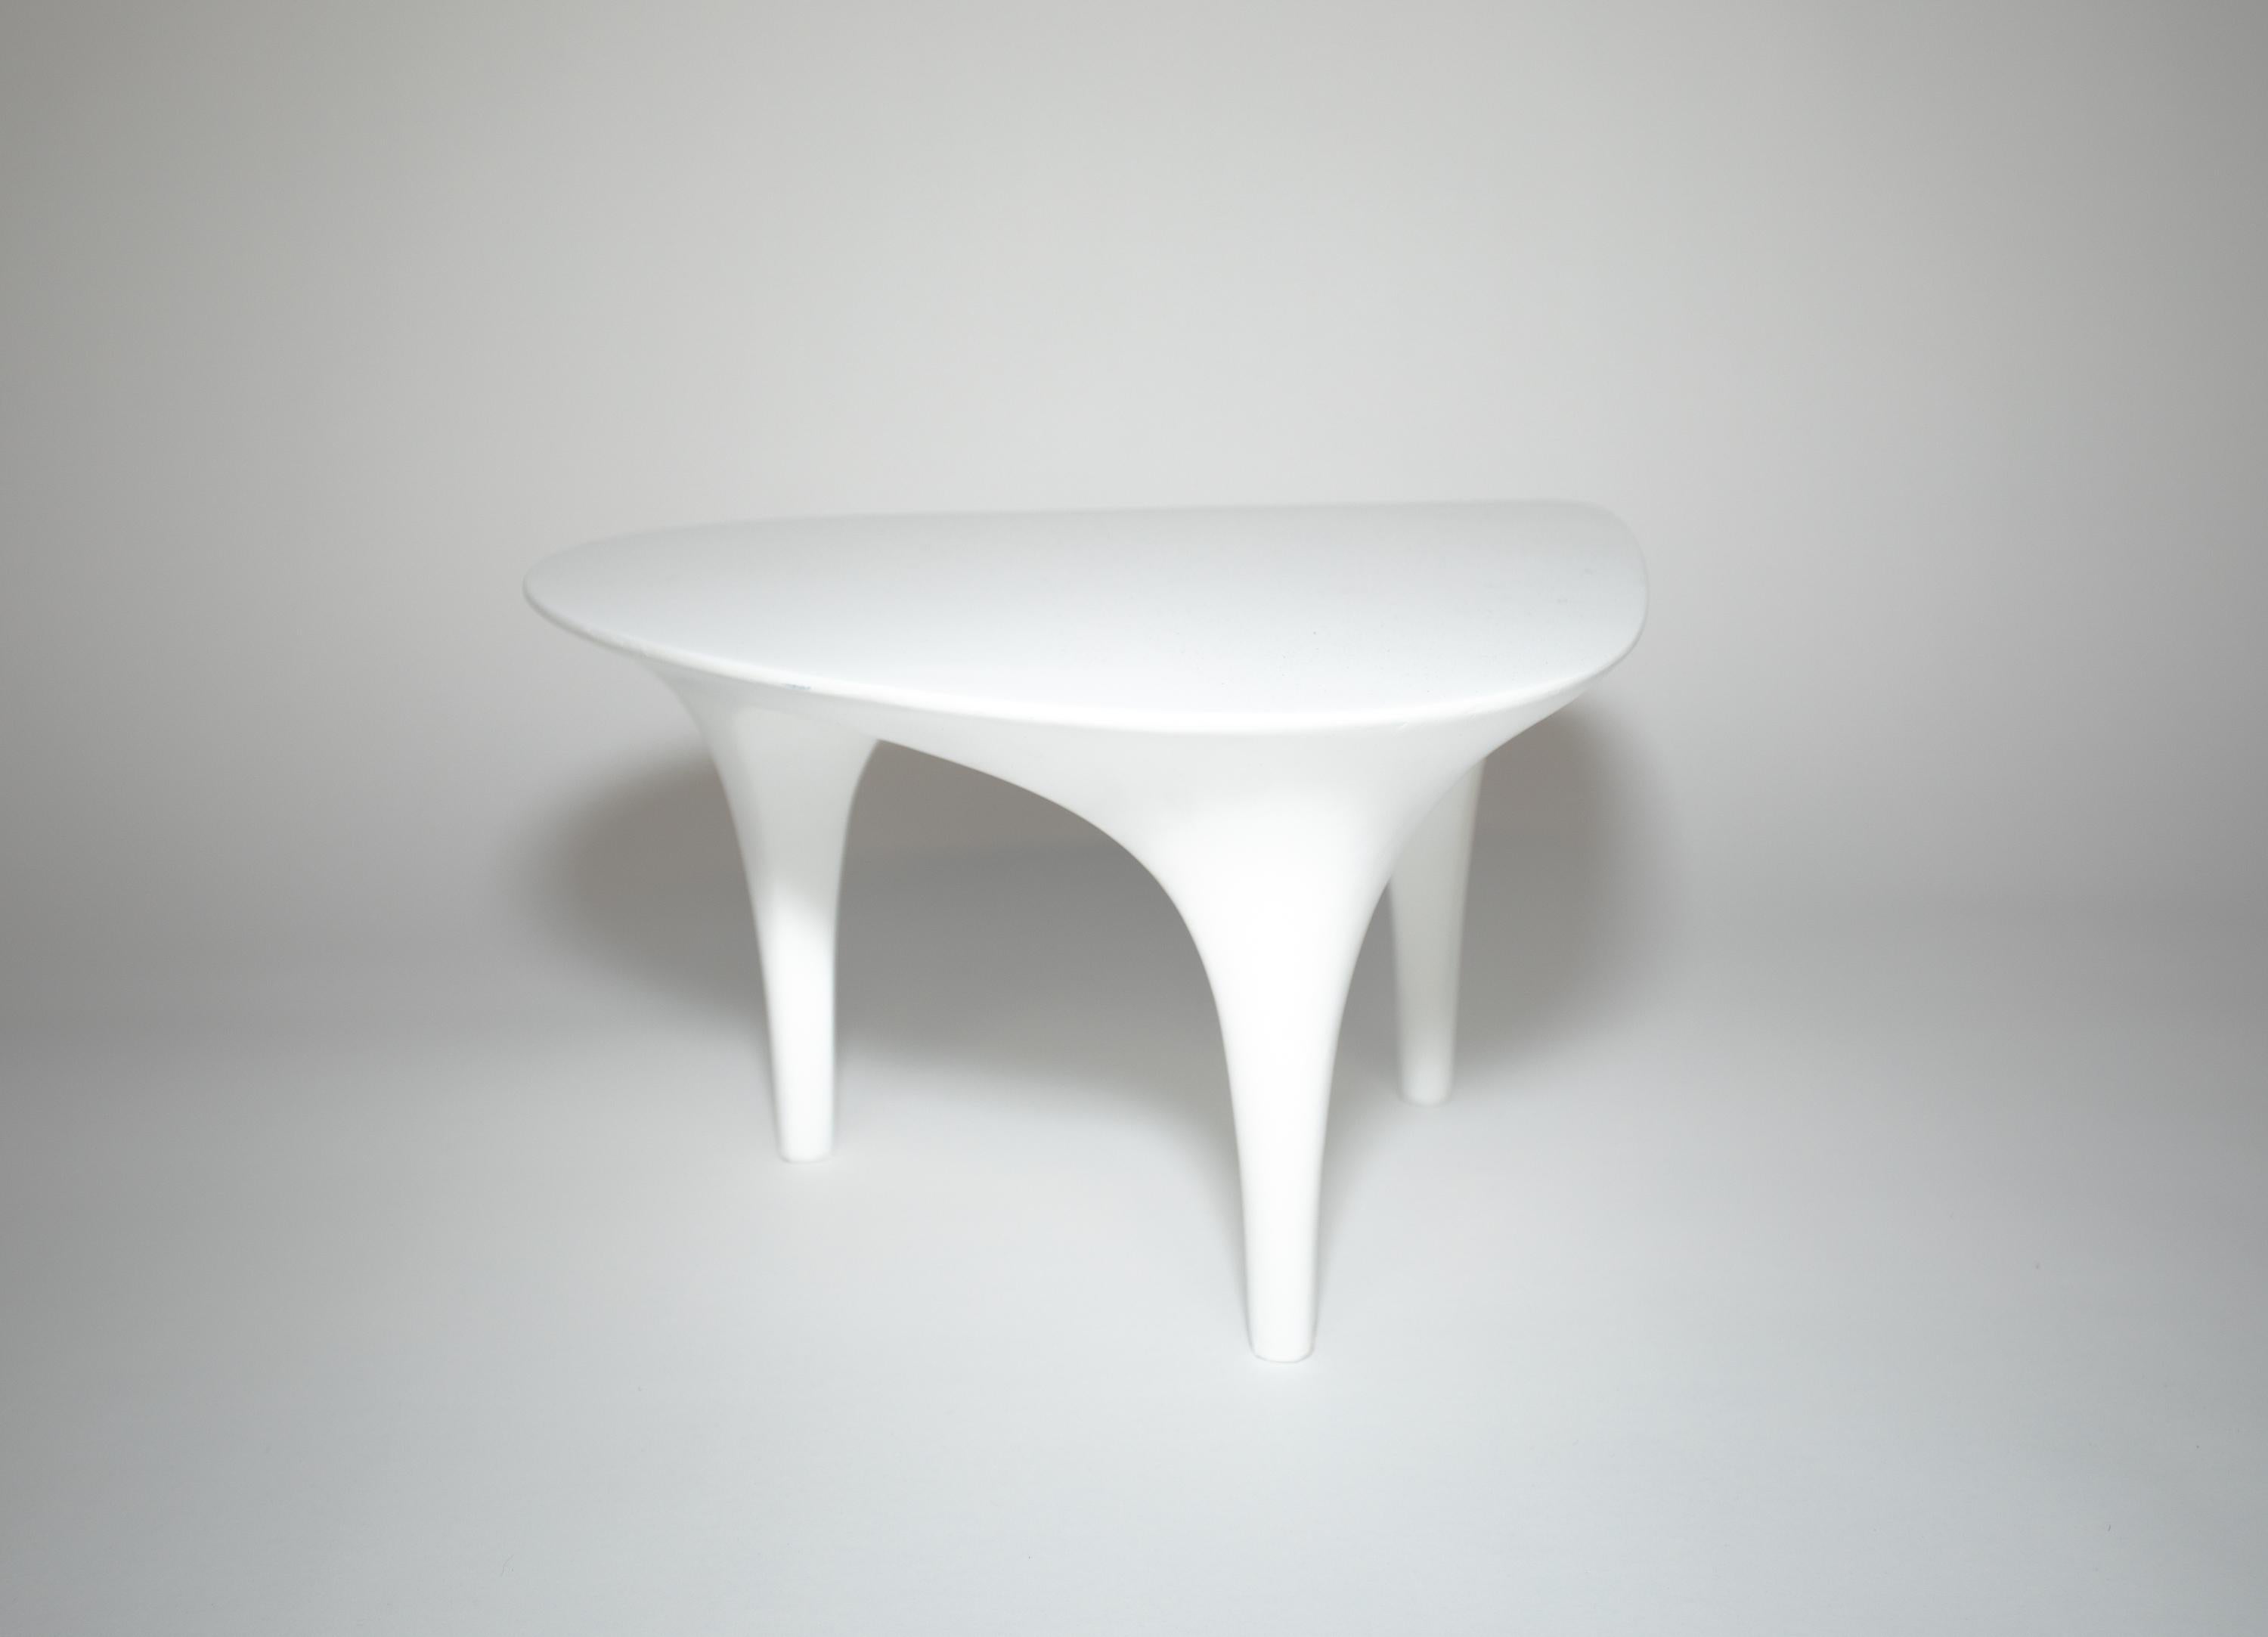 Une petite table laquée blanche
Parfait pour une plante ou une sculpture